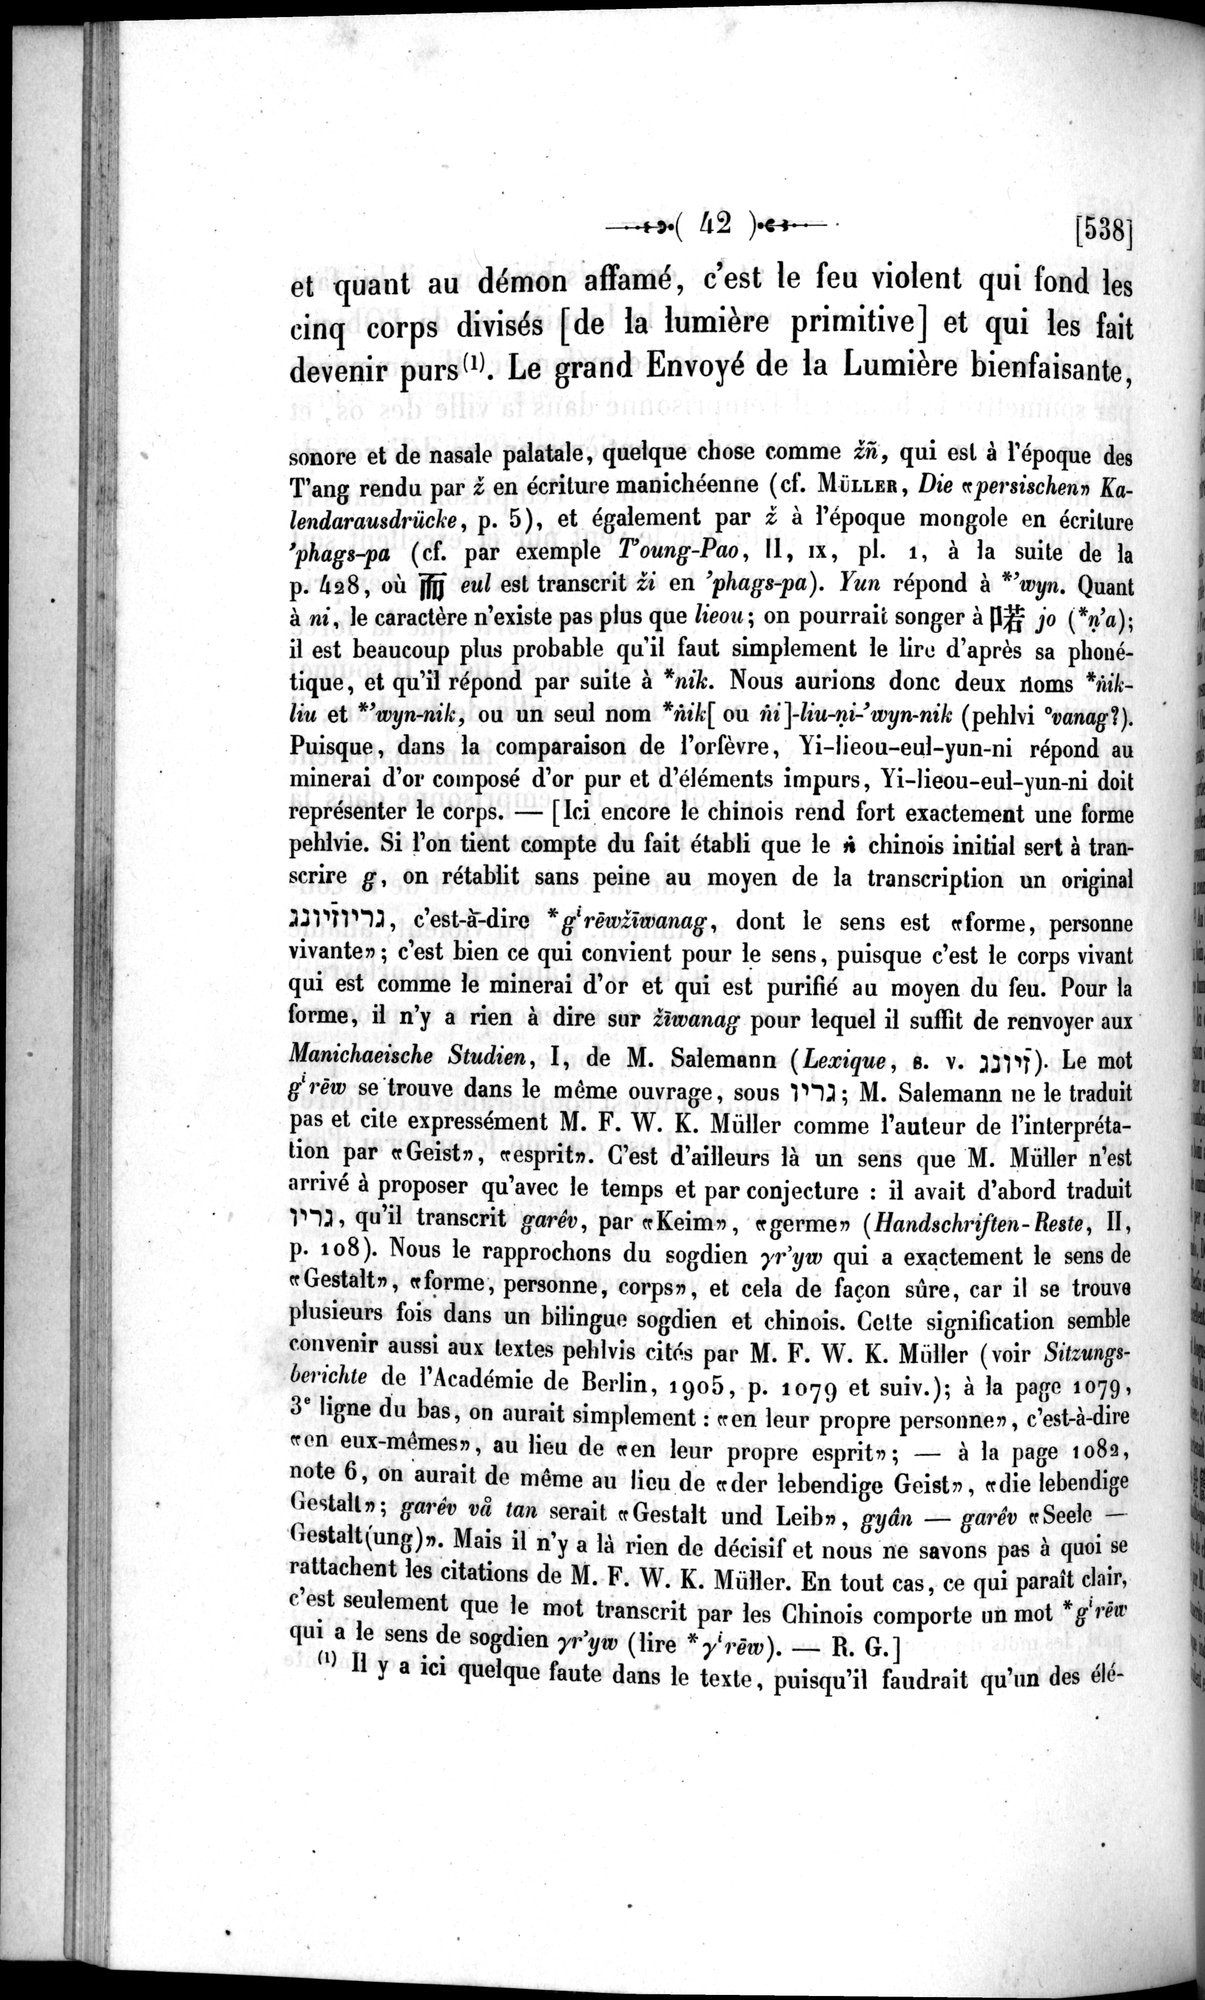 Un traité manichéen retrouvé en Chine : vol.1 / Page 52 (Grayscale High Resolution Image)